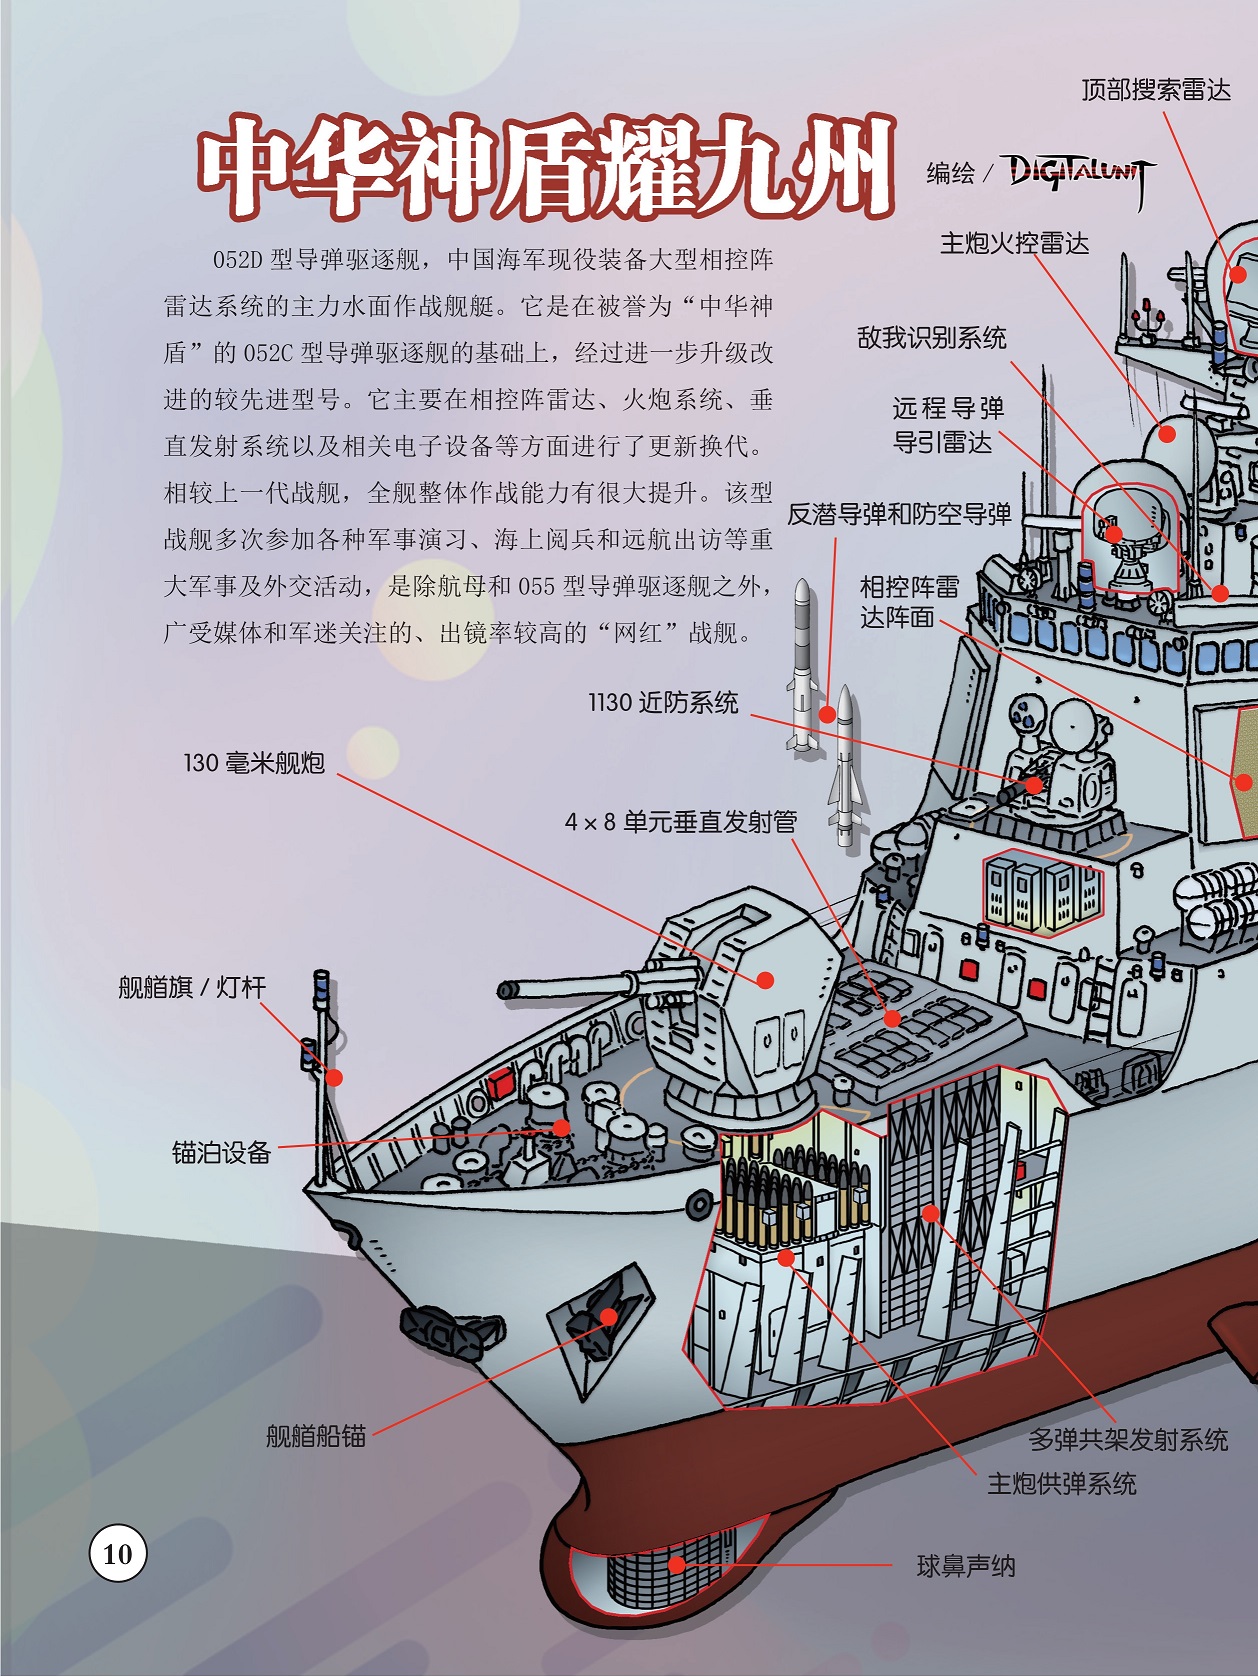 052D型导弹驱逐舰,战舰多次参加各种军事演习